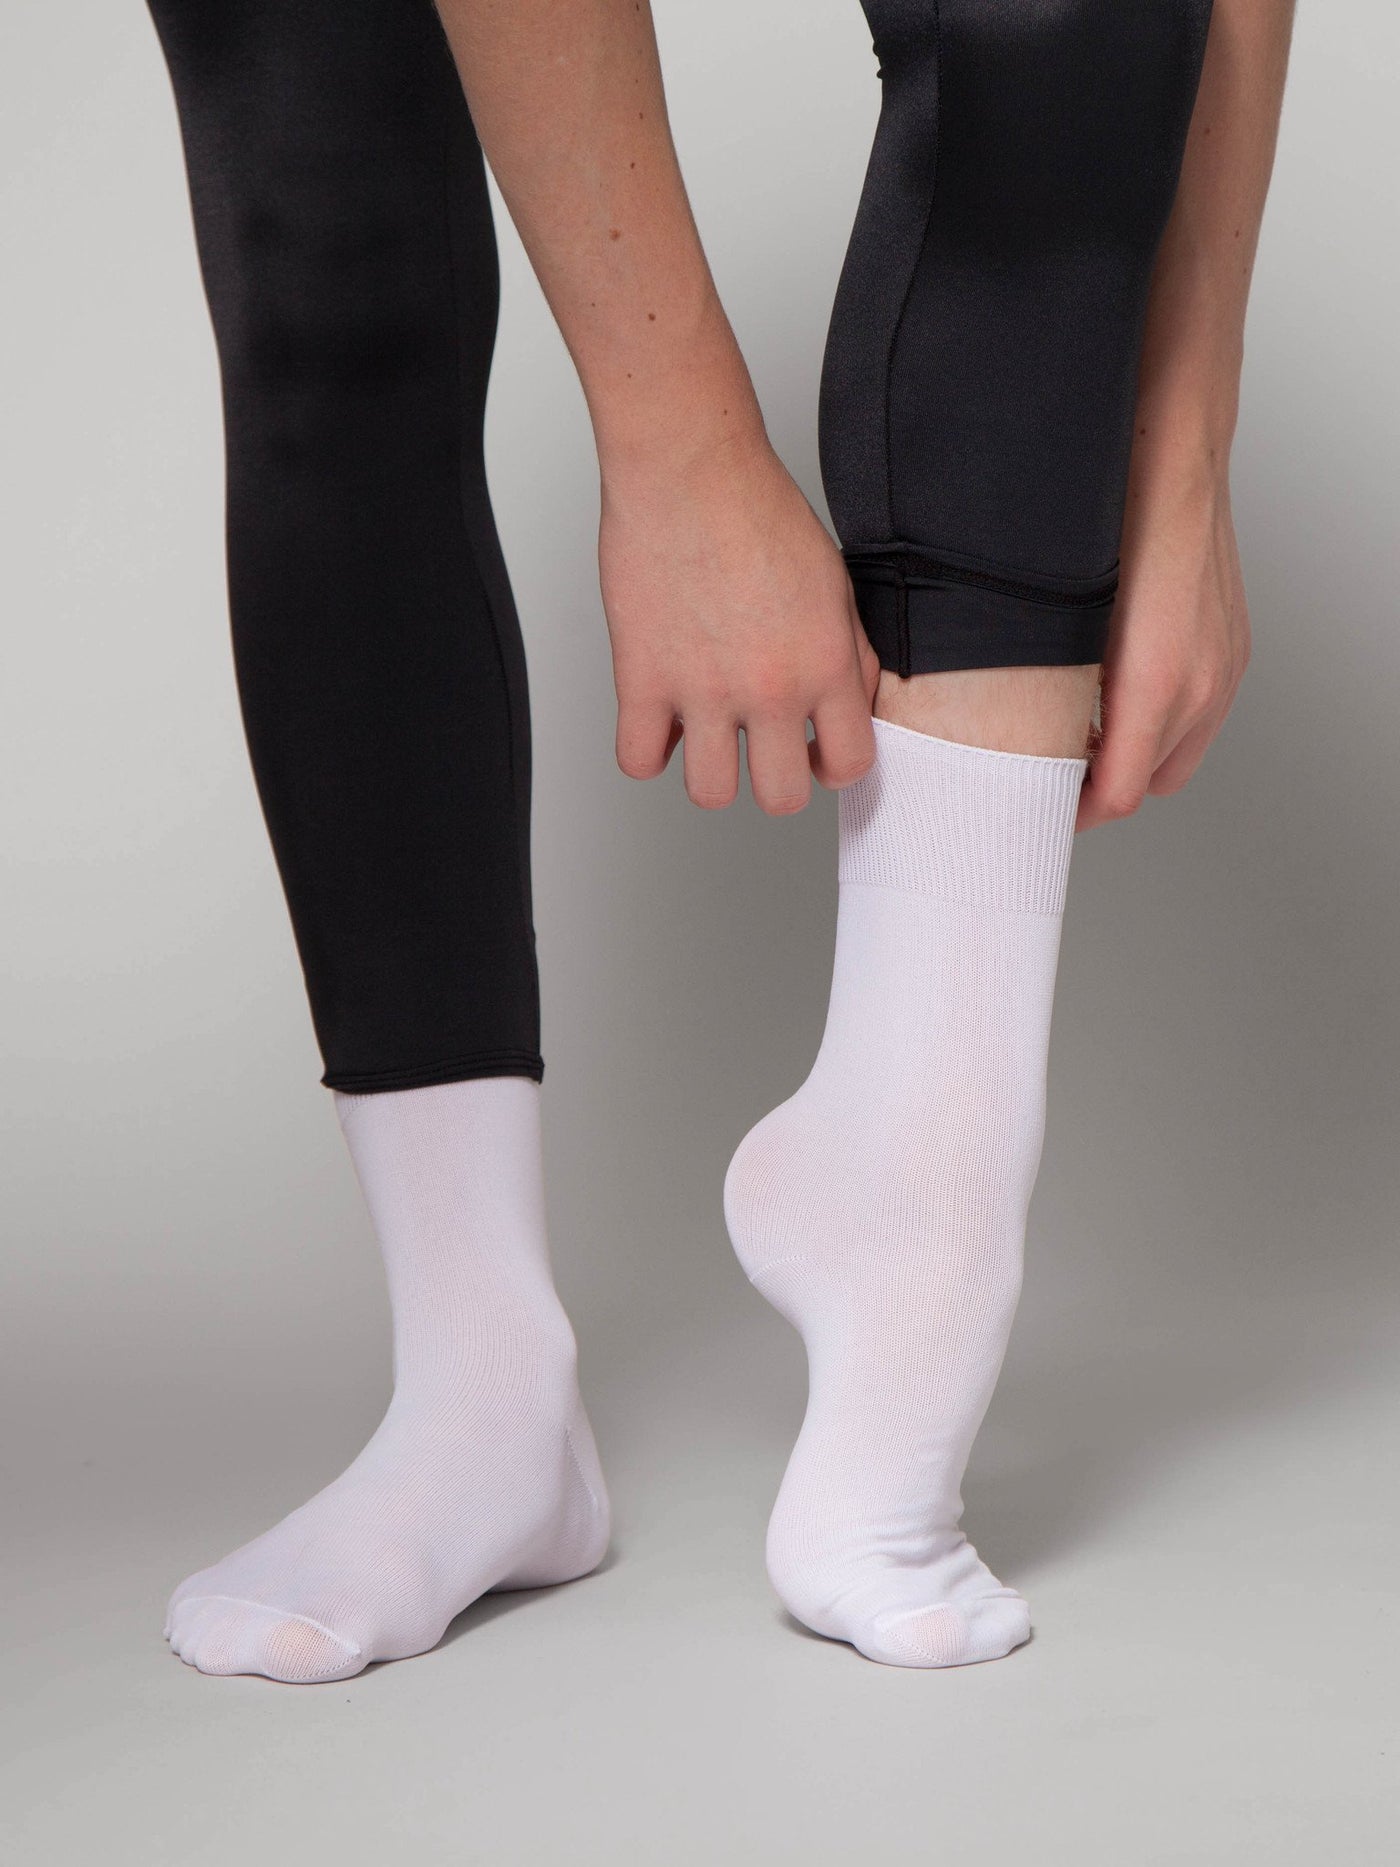 Studio Range Dance Socks - Black, Flesh or Tan - Balletstuff